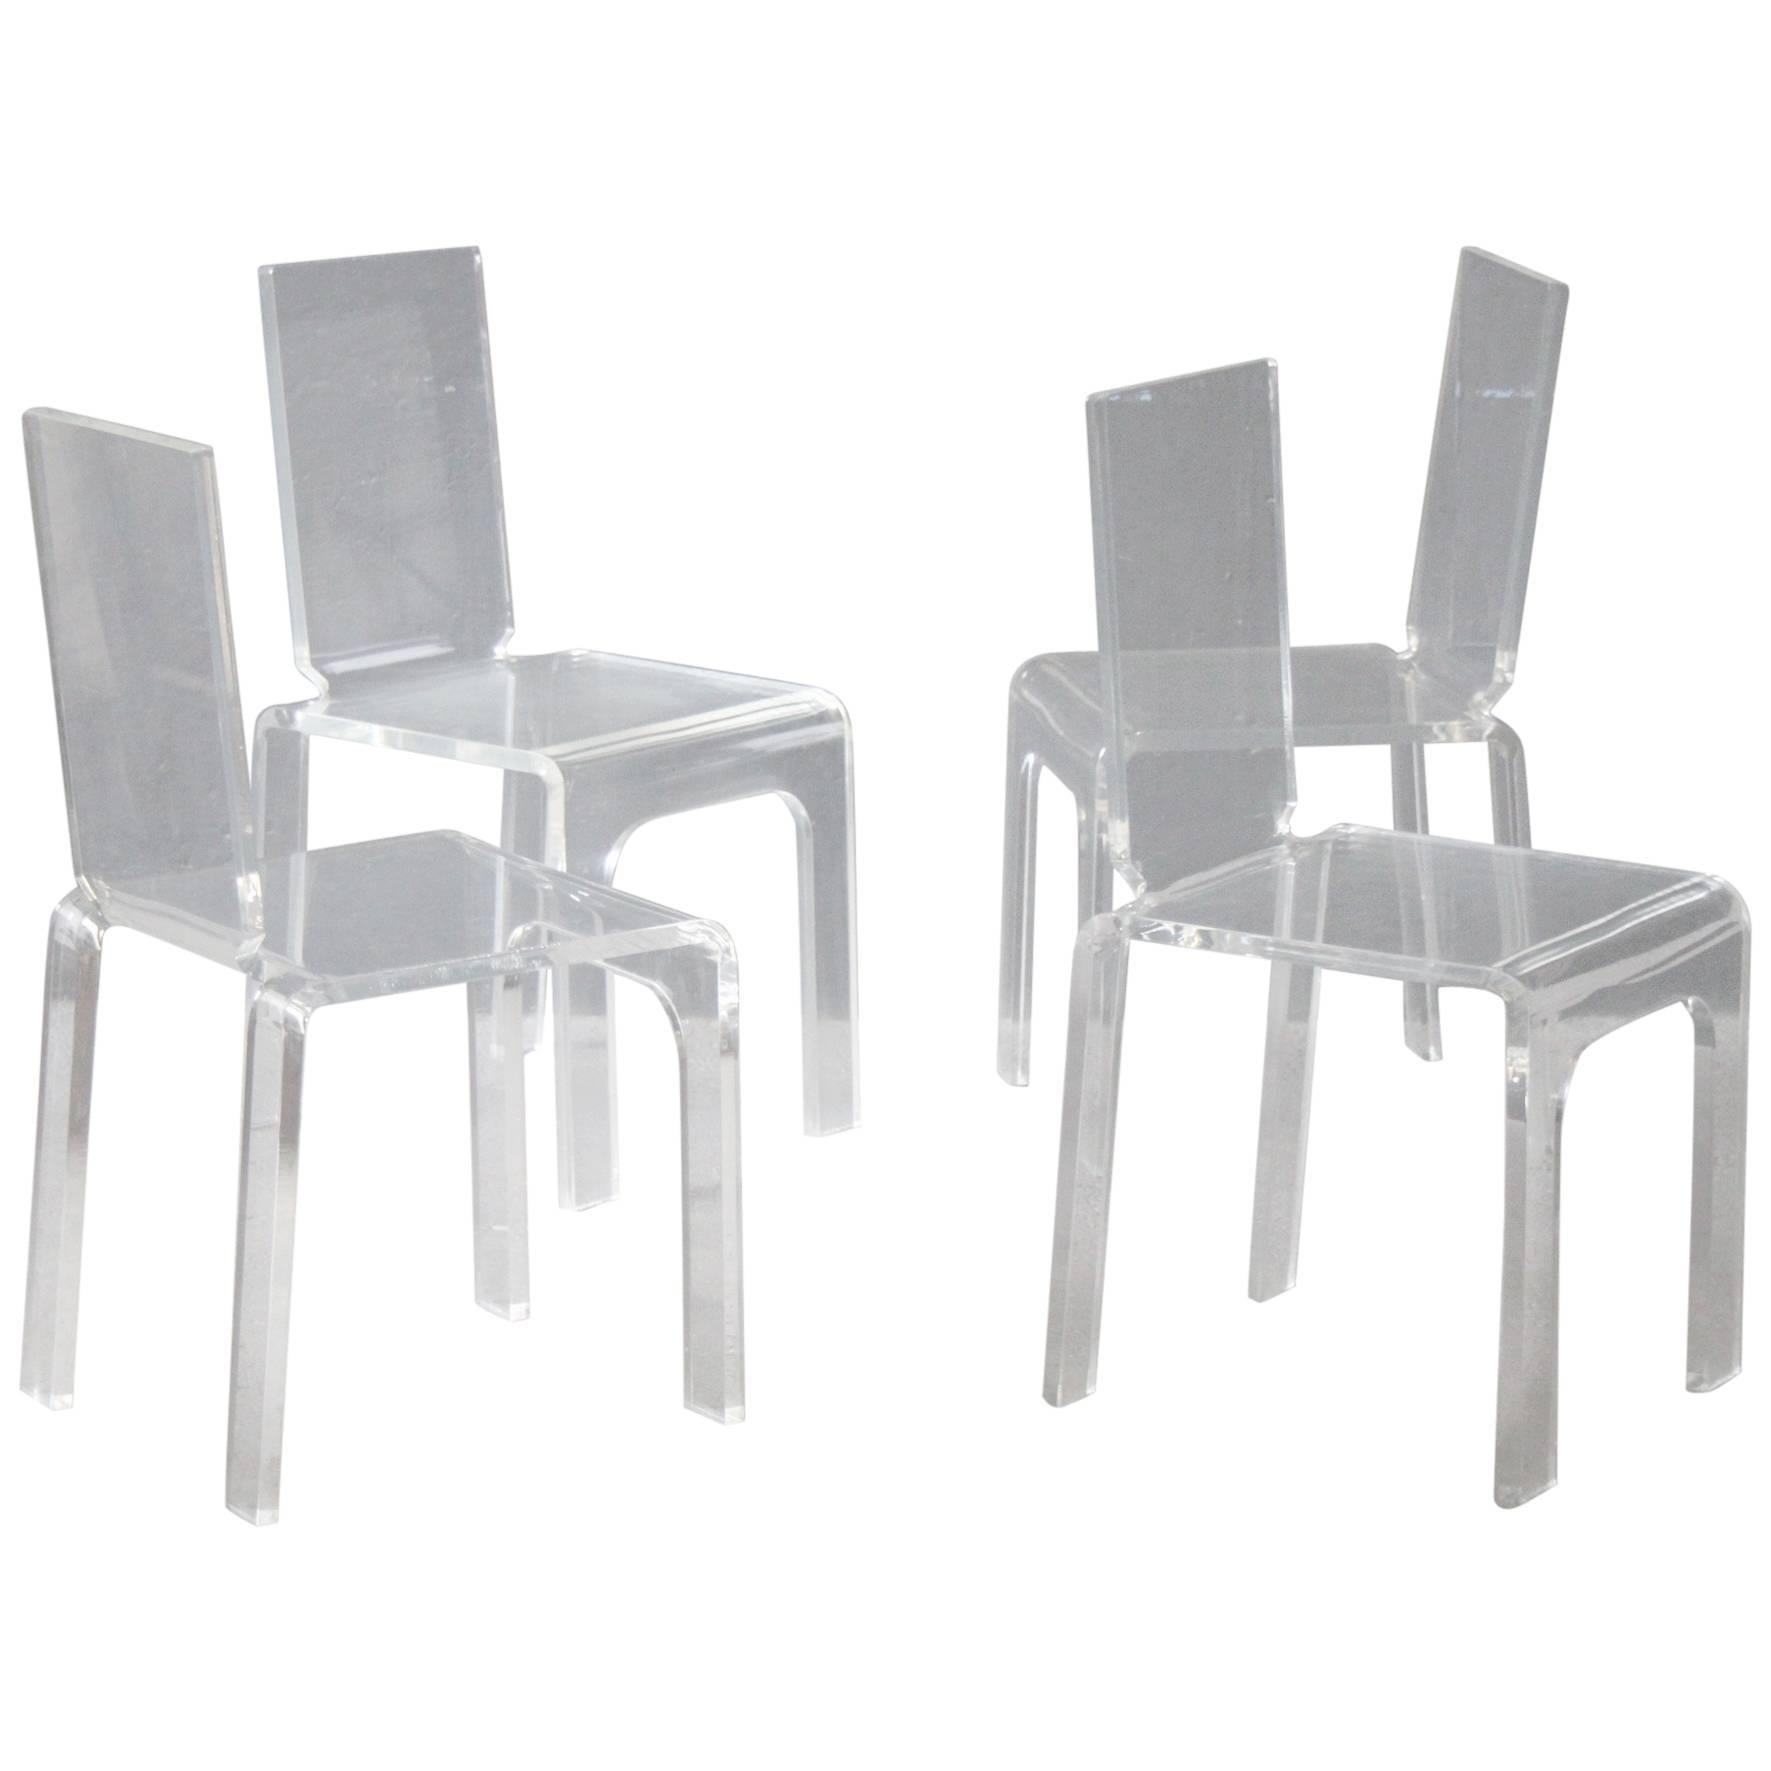 Four Plexiglass Chairs